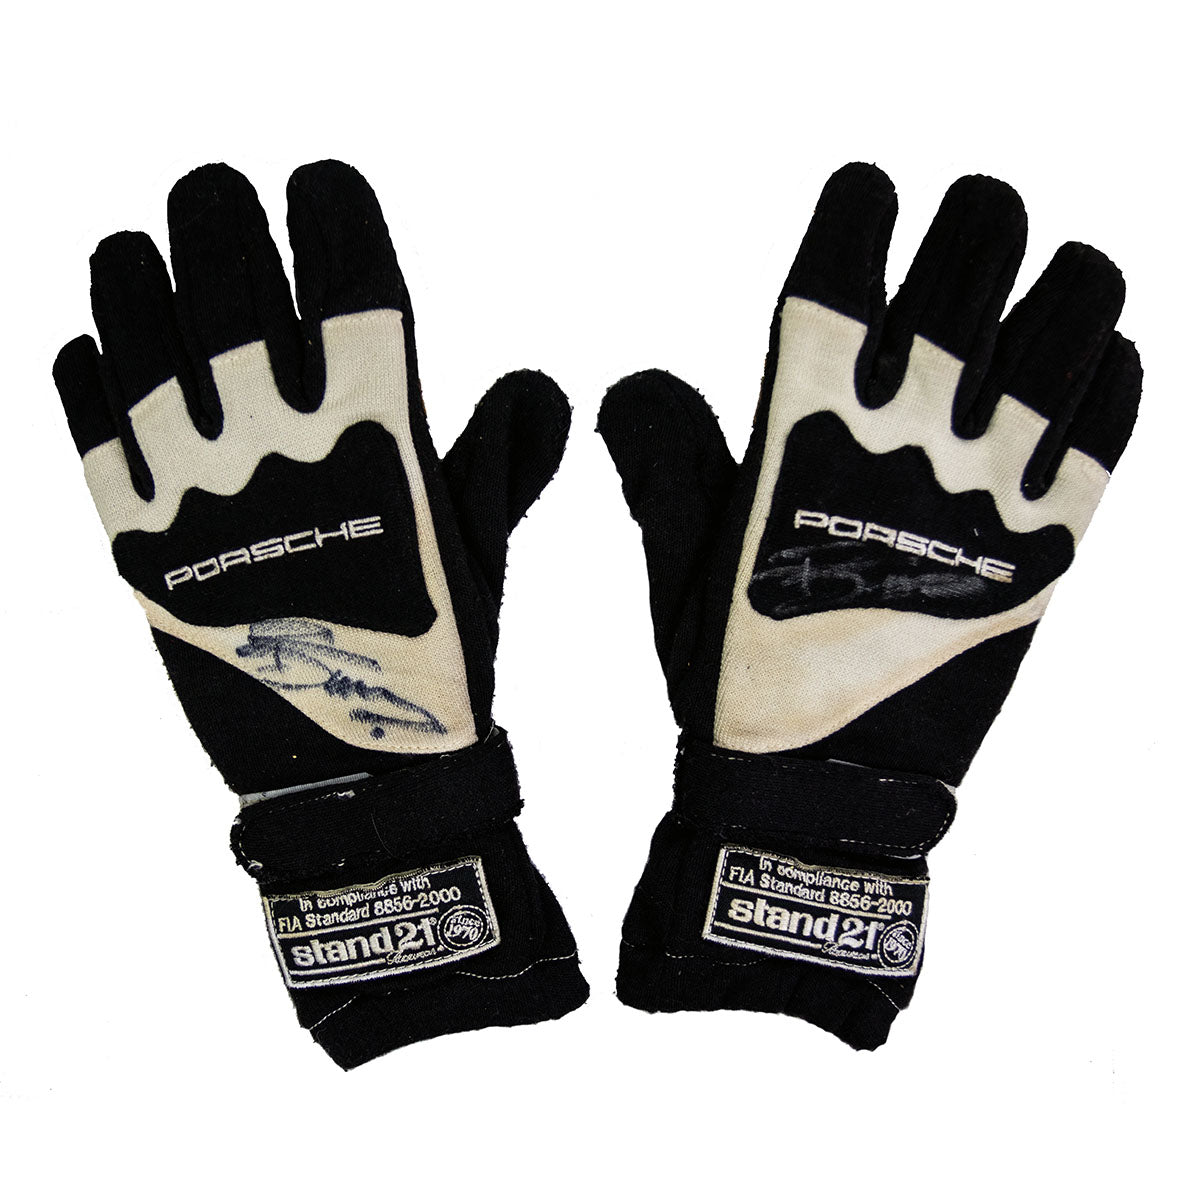 2007/08 Romain Dumas Signed Penske Porsche RS Spyder ALMS Gloves